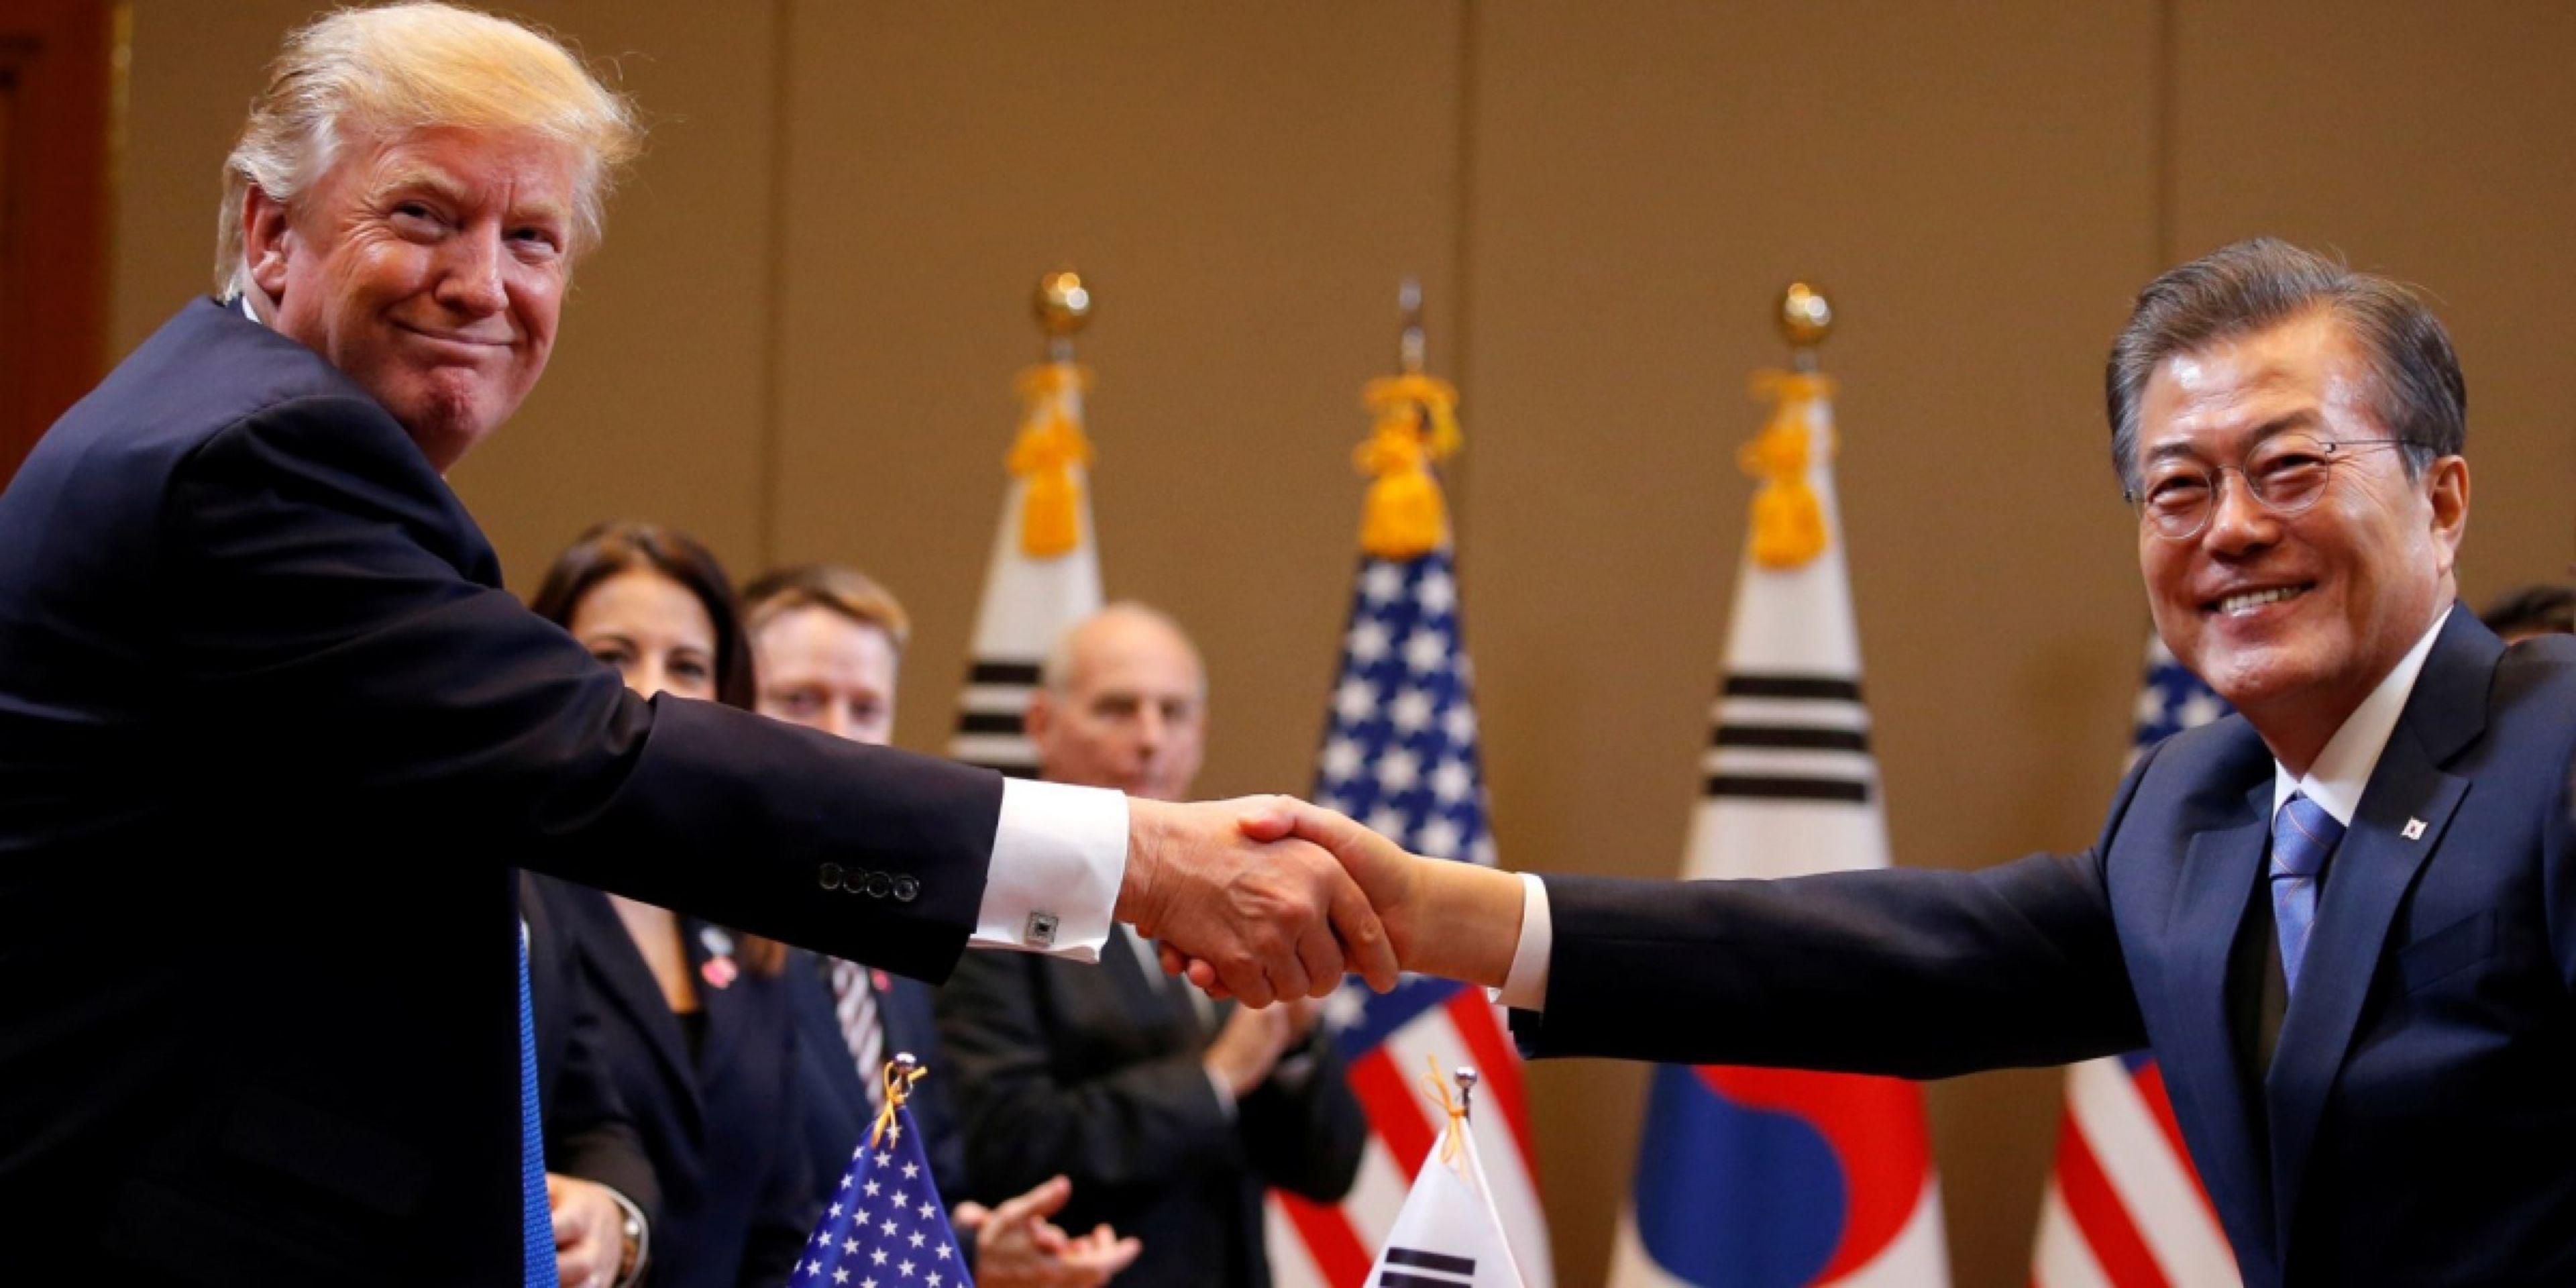 El Presidente Donald Trump y el Presidente surcoreano Moon Jae se dan la mano durante una reunión en la Casa Azul presidencial de Corea del Sur en Seúl, Corea del Sur, el 7 de noviembre de 2017.